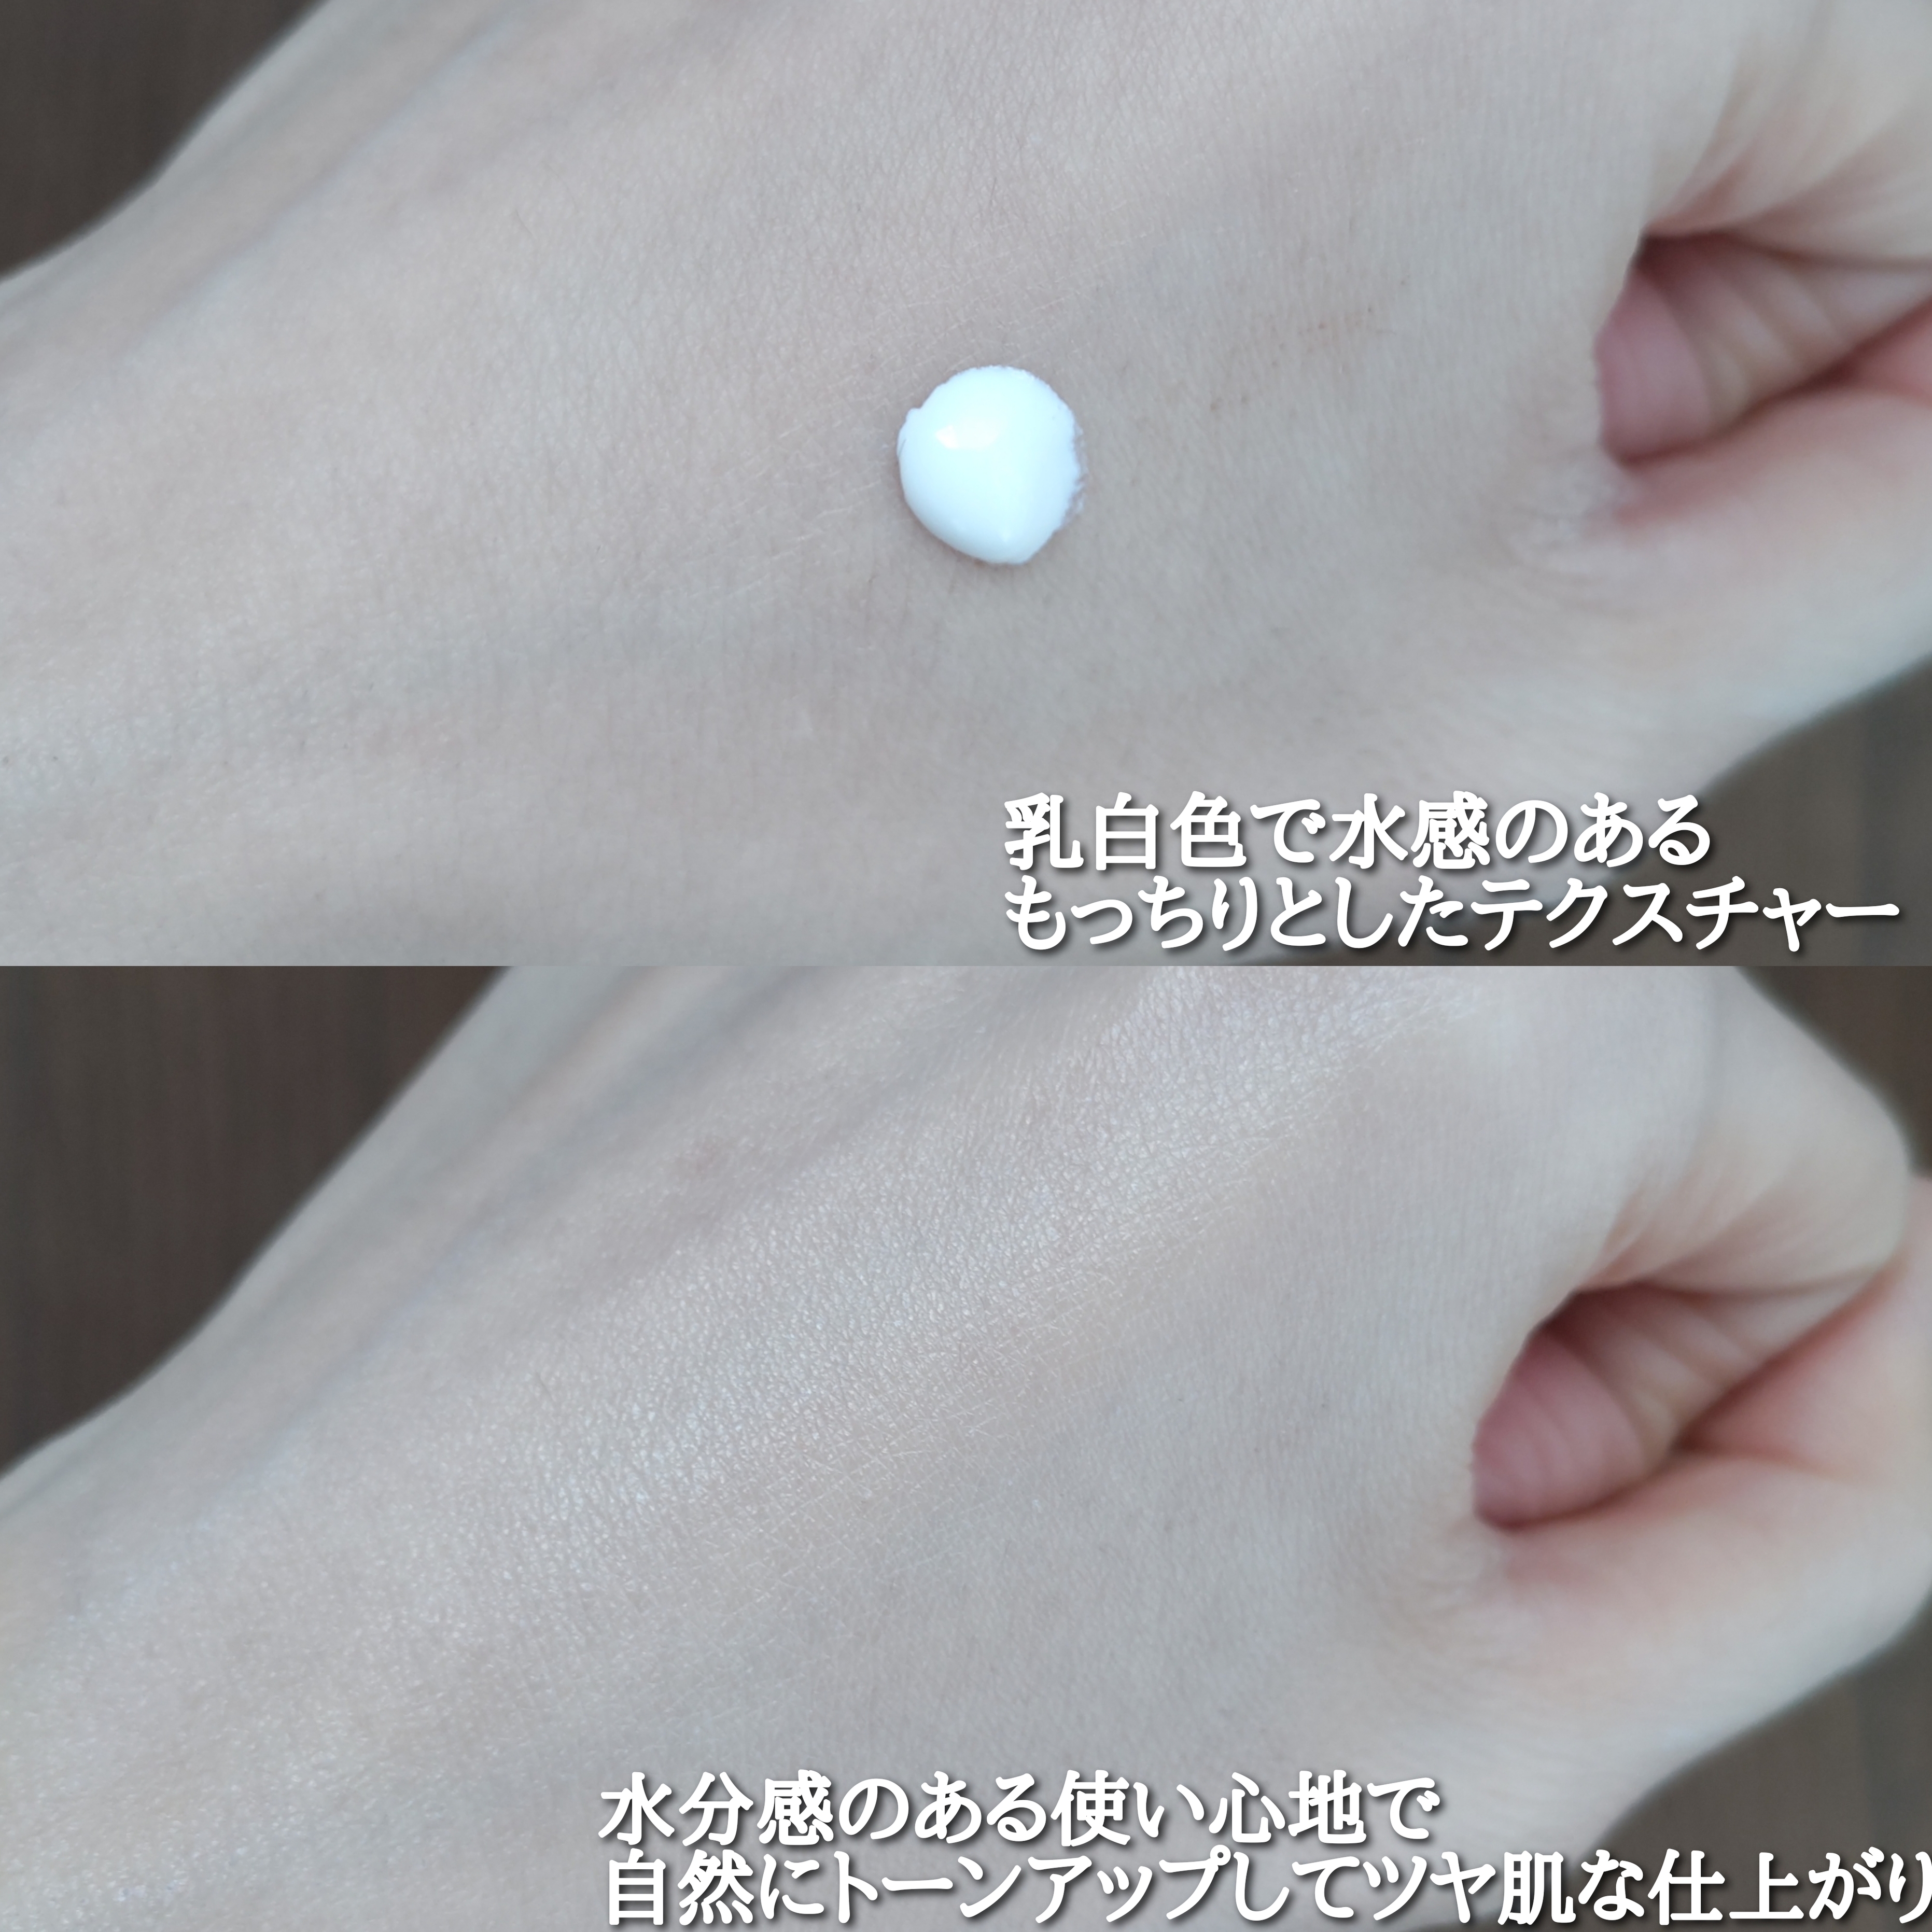 ビオレUV アクアリッチ ウォーターホールドクリーム(水肌記憶UV)を使ったYuKaRi♡さんのクチコミ画像4